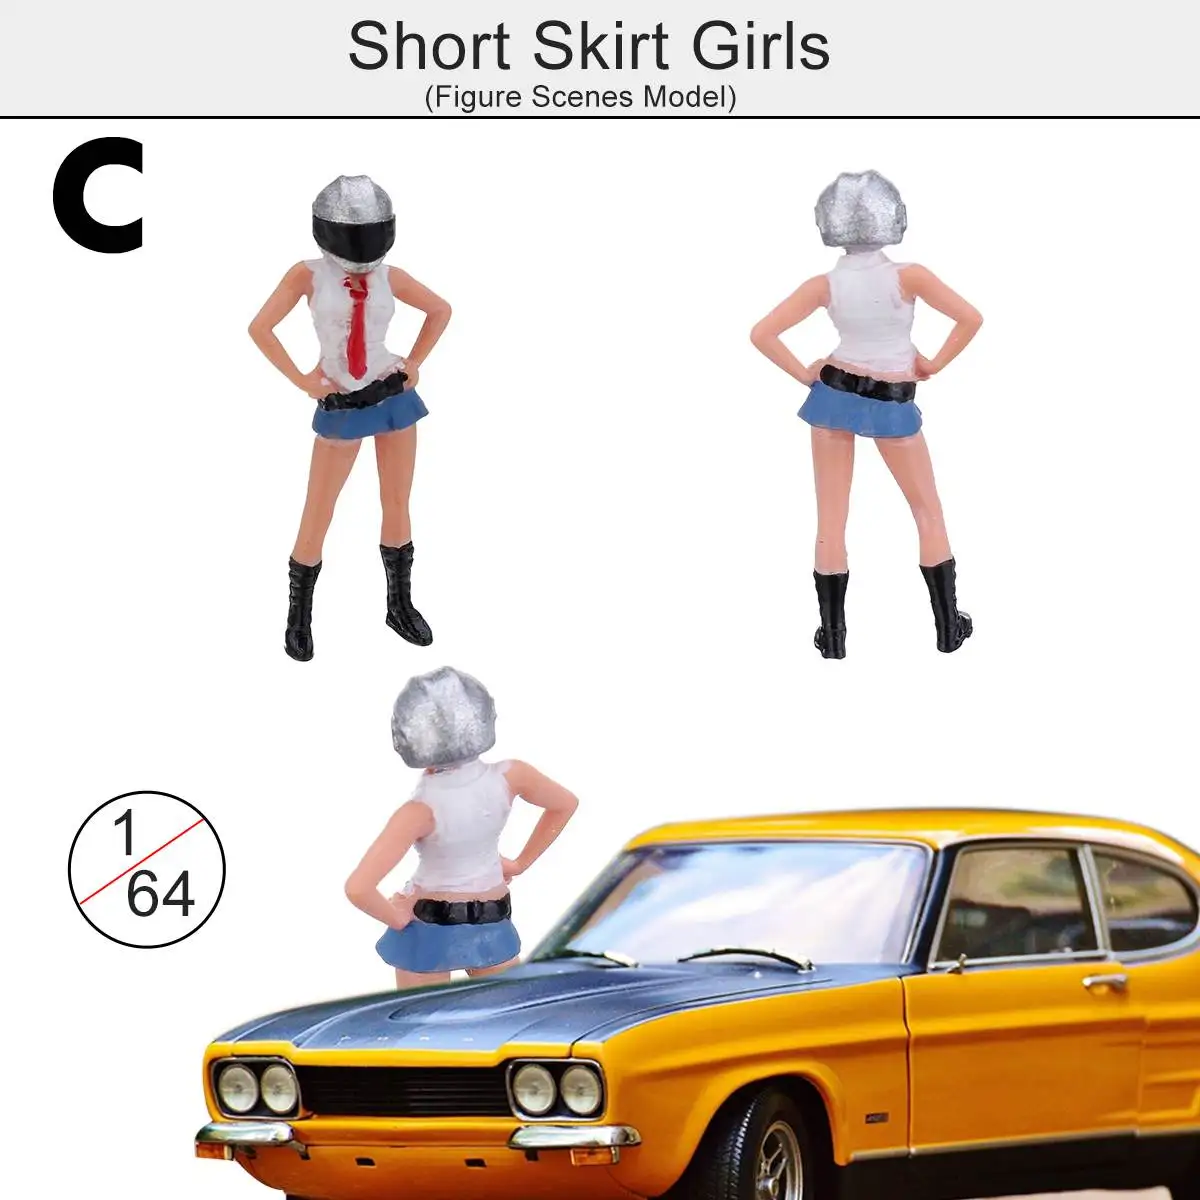 1: 64 RM игрушечный персонаж из мультфильма; шлем с изображением звезды для девочек фотограф модель автомобиля ПВХ 1/4 шт. рисунок сцены модель игрушка группа модели сценариев